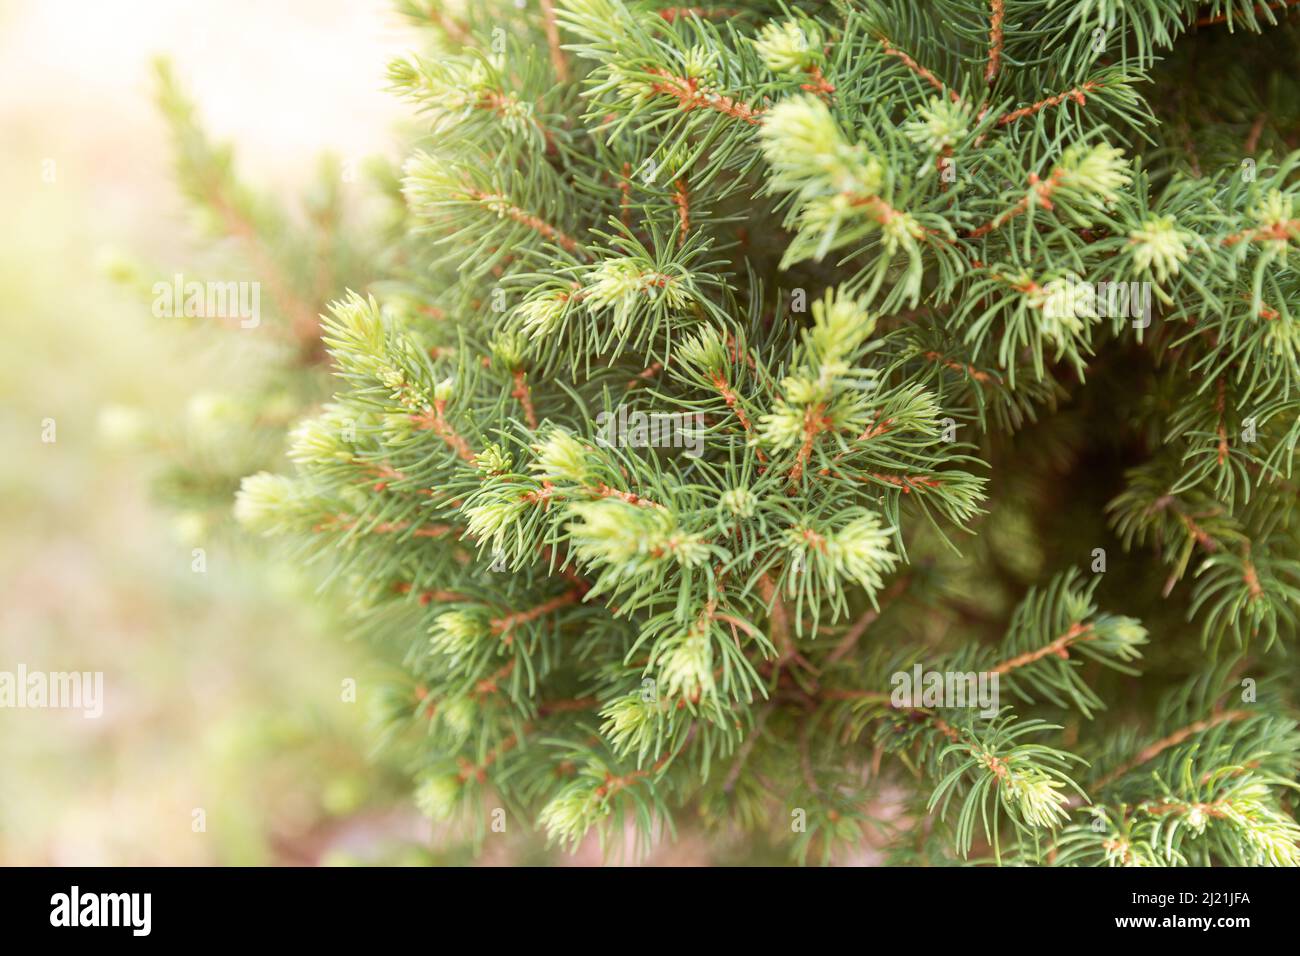 Zwergfichte Conica (Picea glauca oder weiße Fichte). Zweige mit jungen Triebe mit jährlichem Wachstum Stockfoto